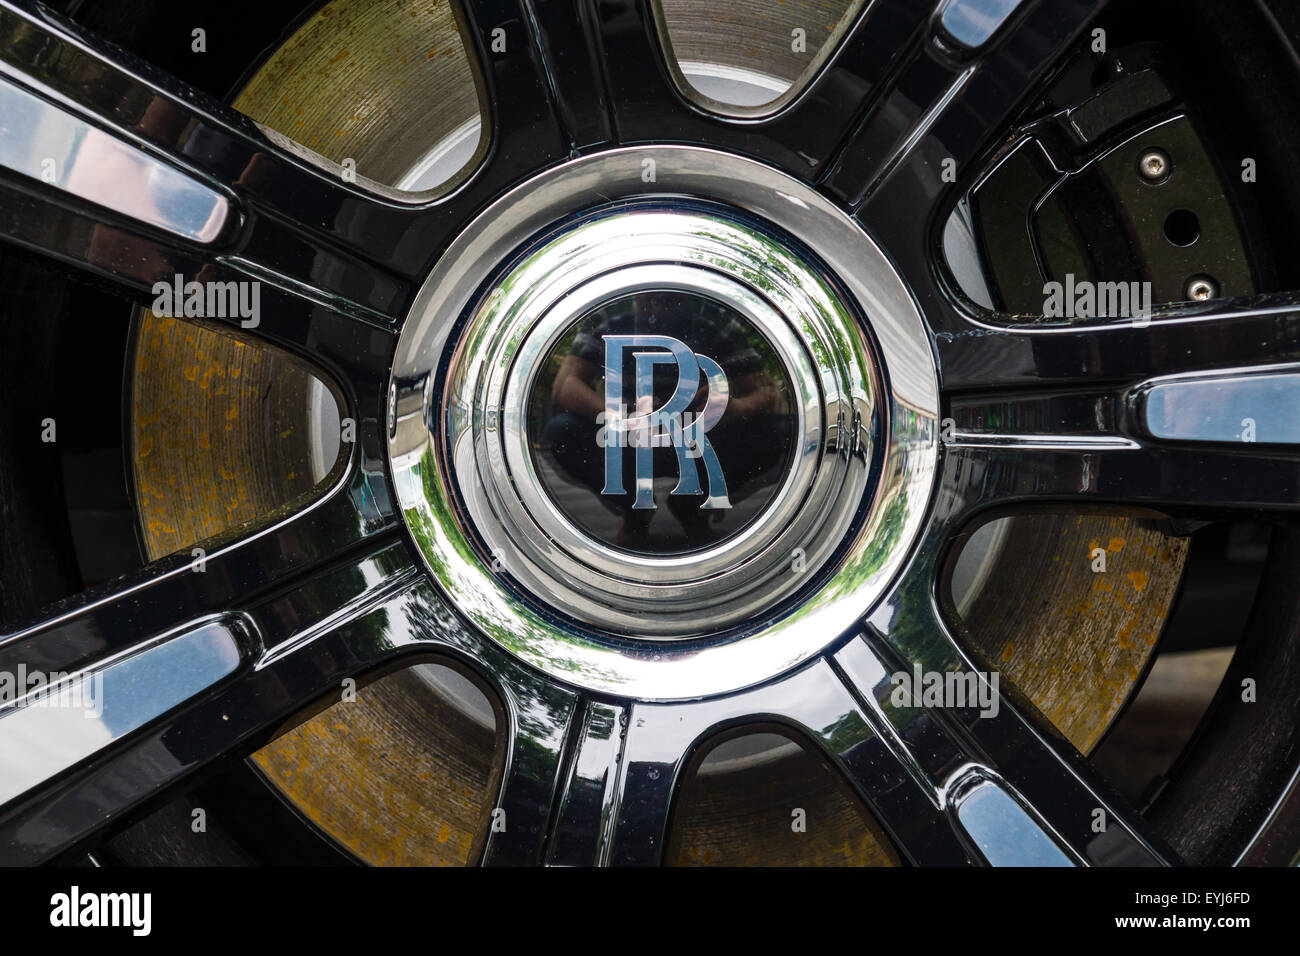 Détail de la roue et le système de freinage de la voiture de luxe Rolls-Royce Ghost (depuis 2010). Les Classic Days sur Kurfuerstendamm Banque D'Images